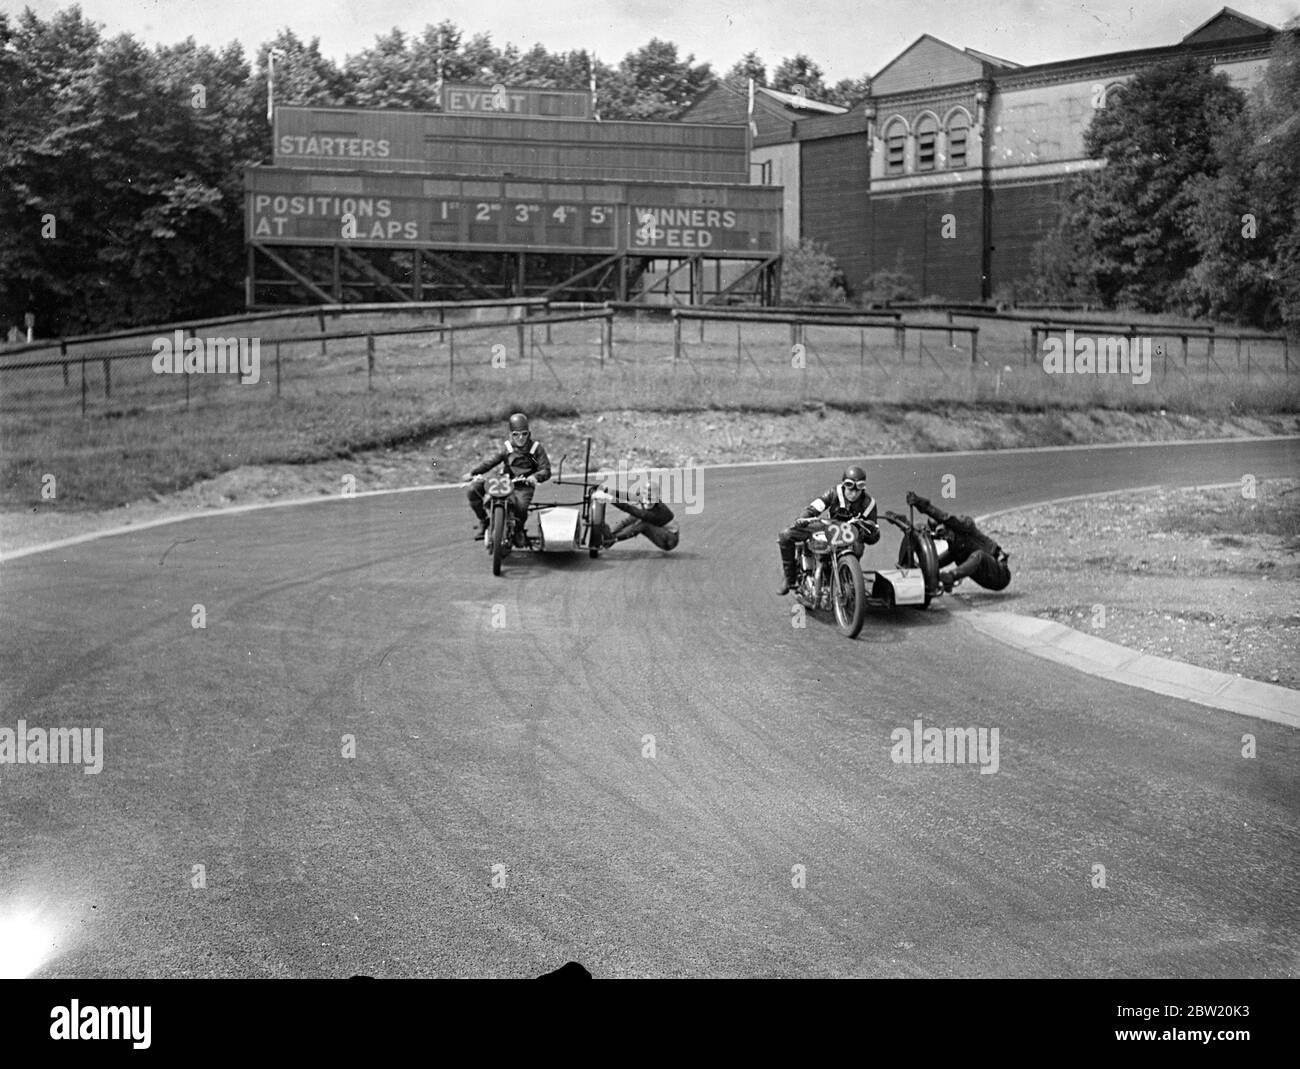 Les motocyclistes ont eu une dernière pratique sur le circuit de course de Crystal Palace Road pour la réunion du Grand Prix de Londres aujourd'hui (samedi). John Surtees (23) et T. F. Pullin (28) se battent pour la tête sur le tremplin du stade. 17 juillet 1937. Banque D'Images